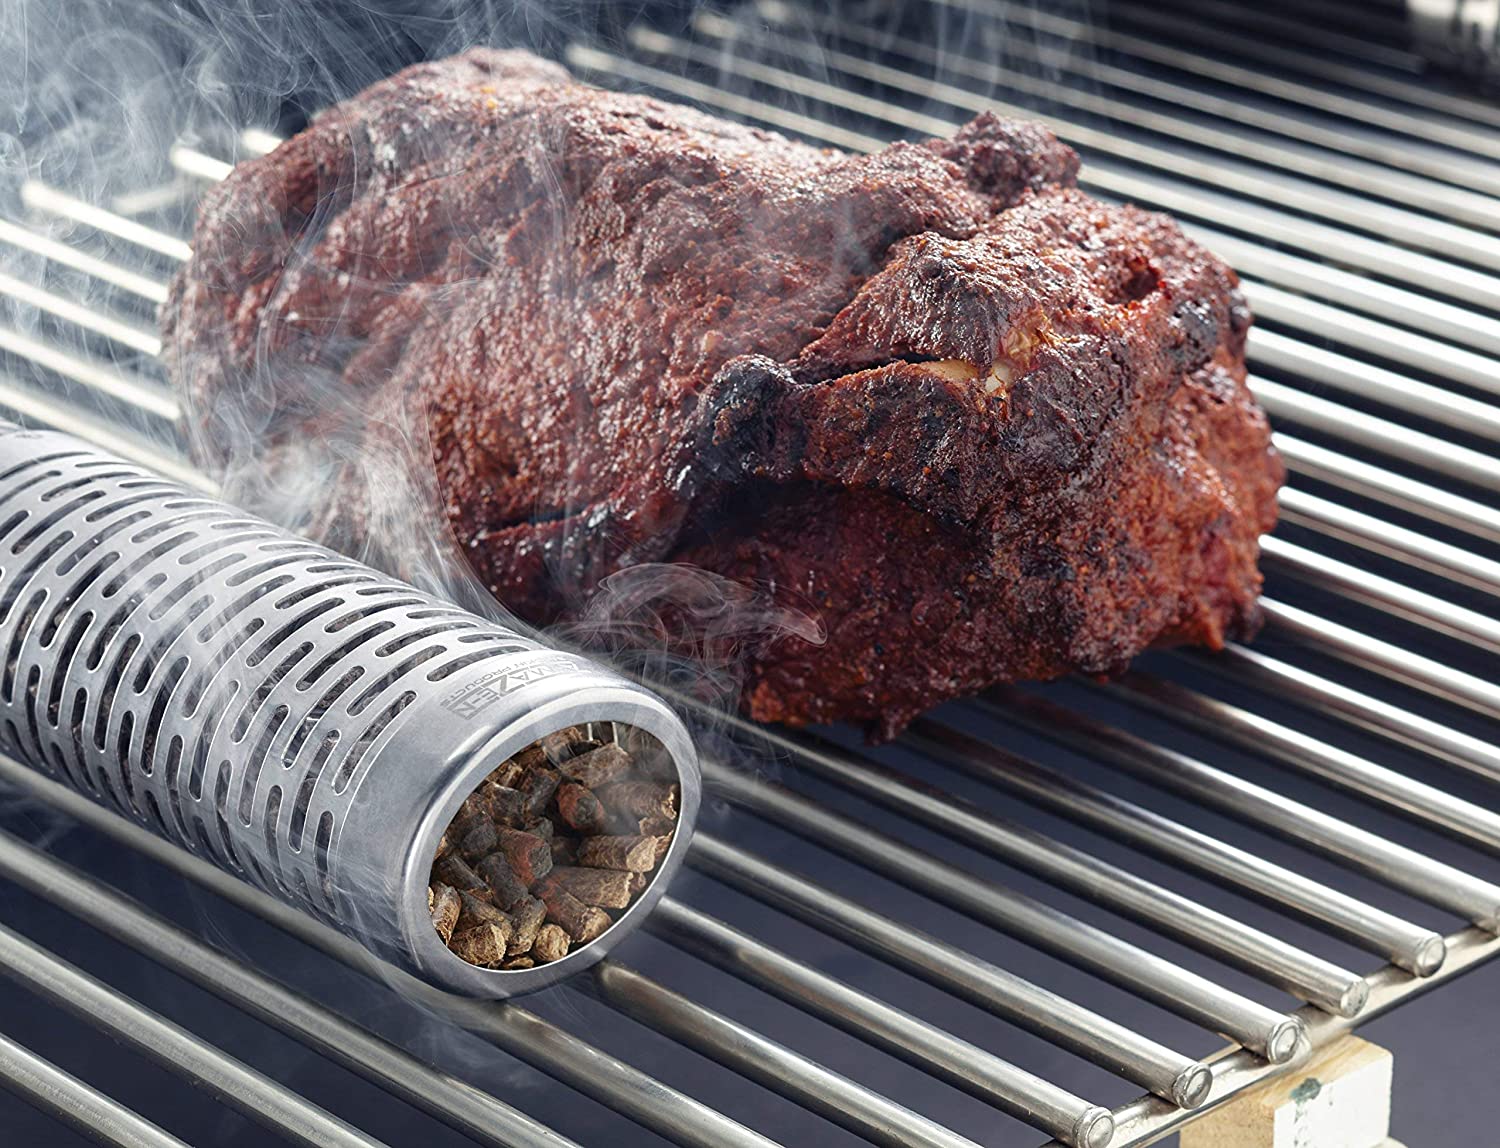 A-Maze-N Oval Pellet Tube Smoker Beside a Steak on a Grill